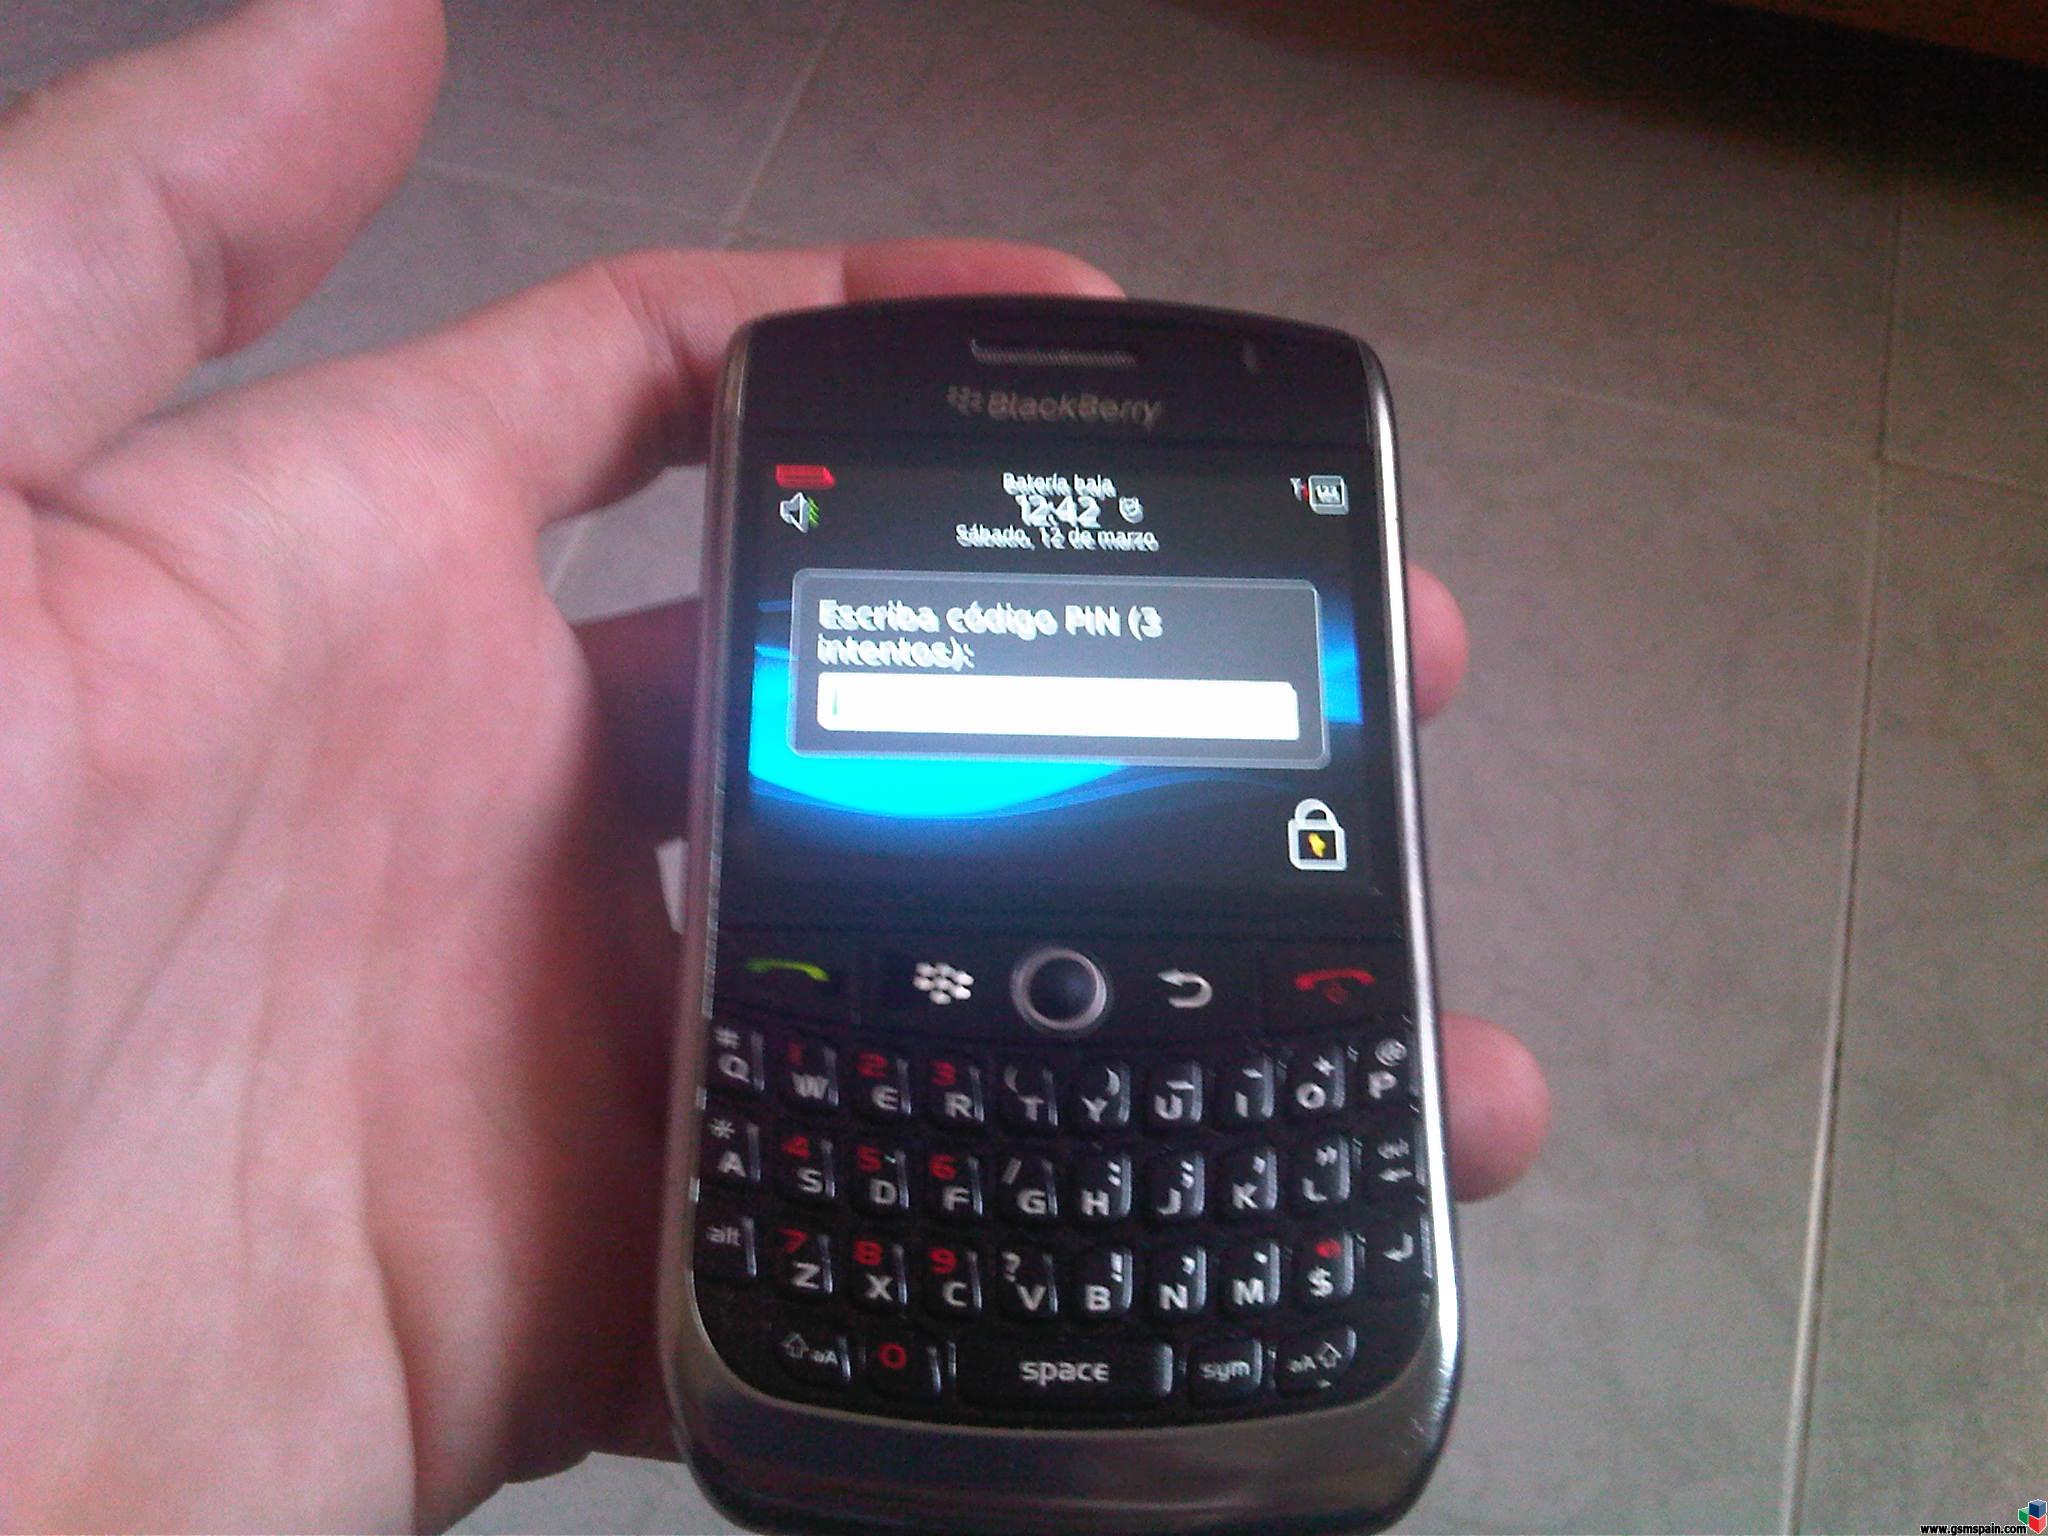 [VENDO] Blackberry cuerve 8900 liberada 95 euros